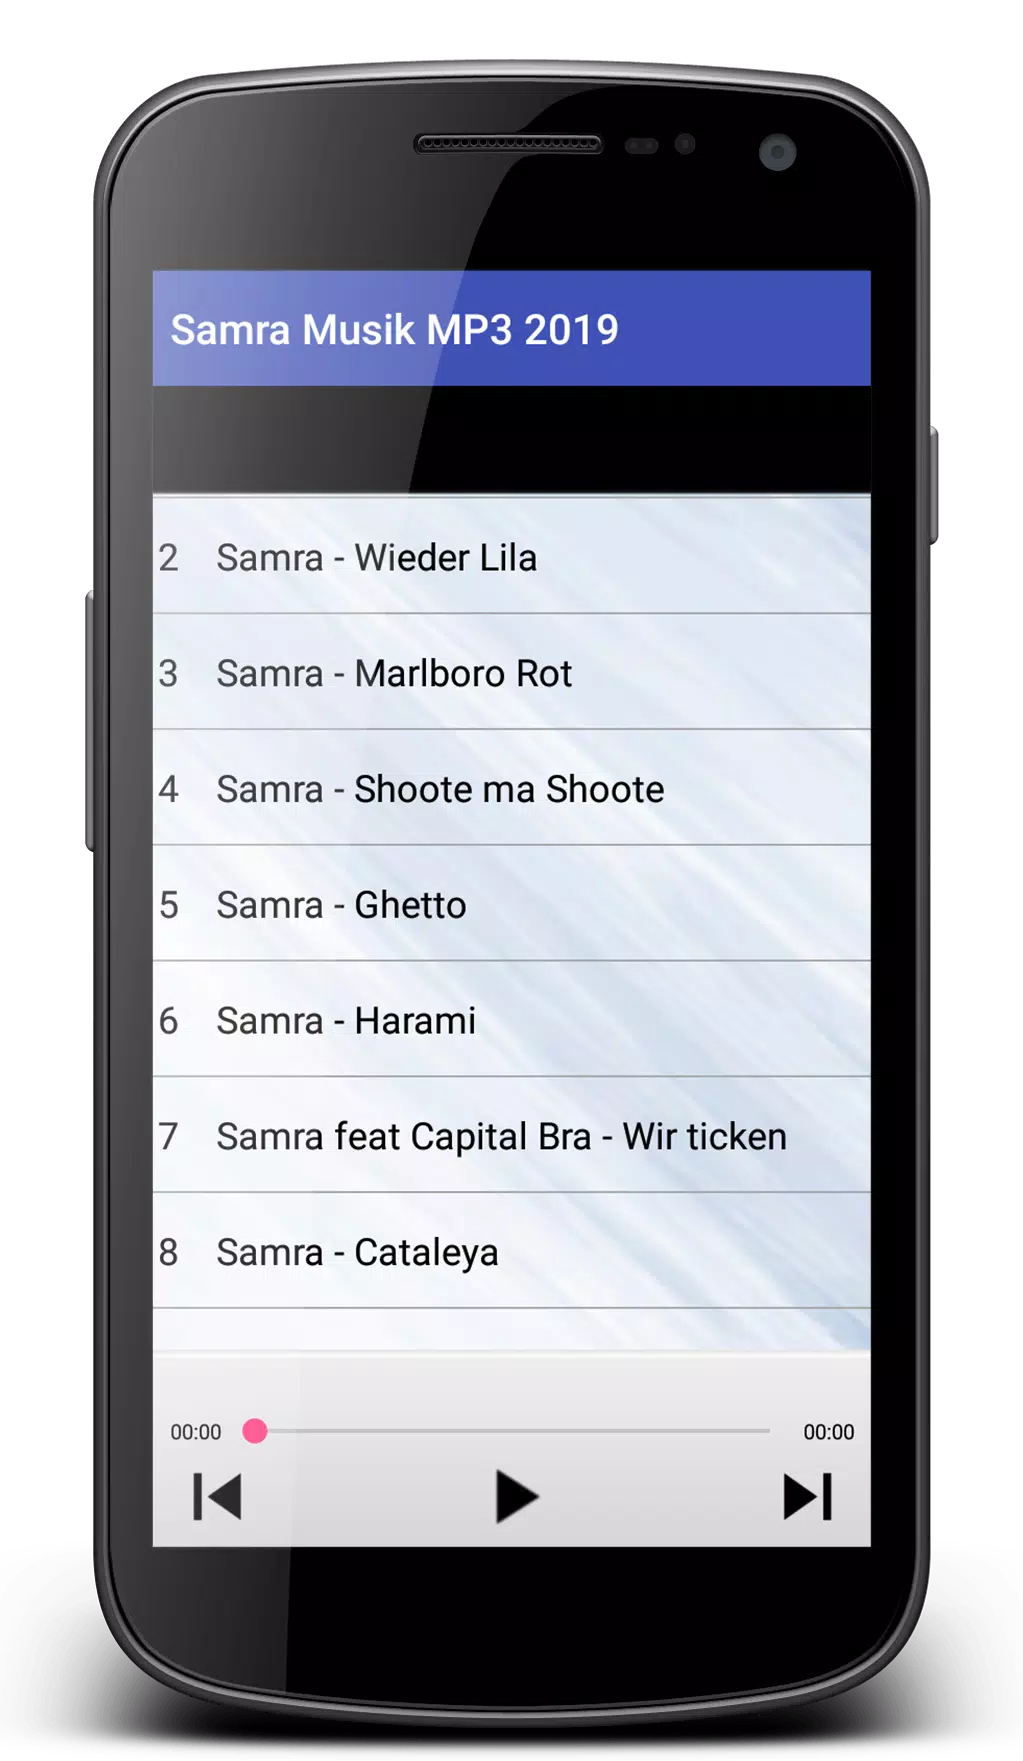 Samra Musik 2019 - Beste MP3 APK for Android Download